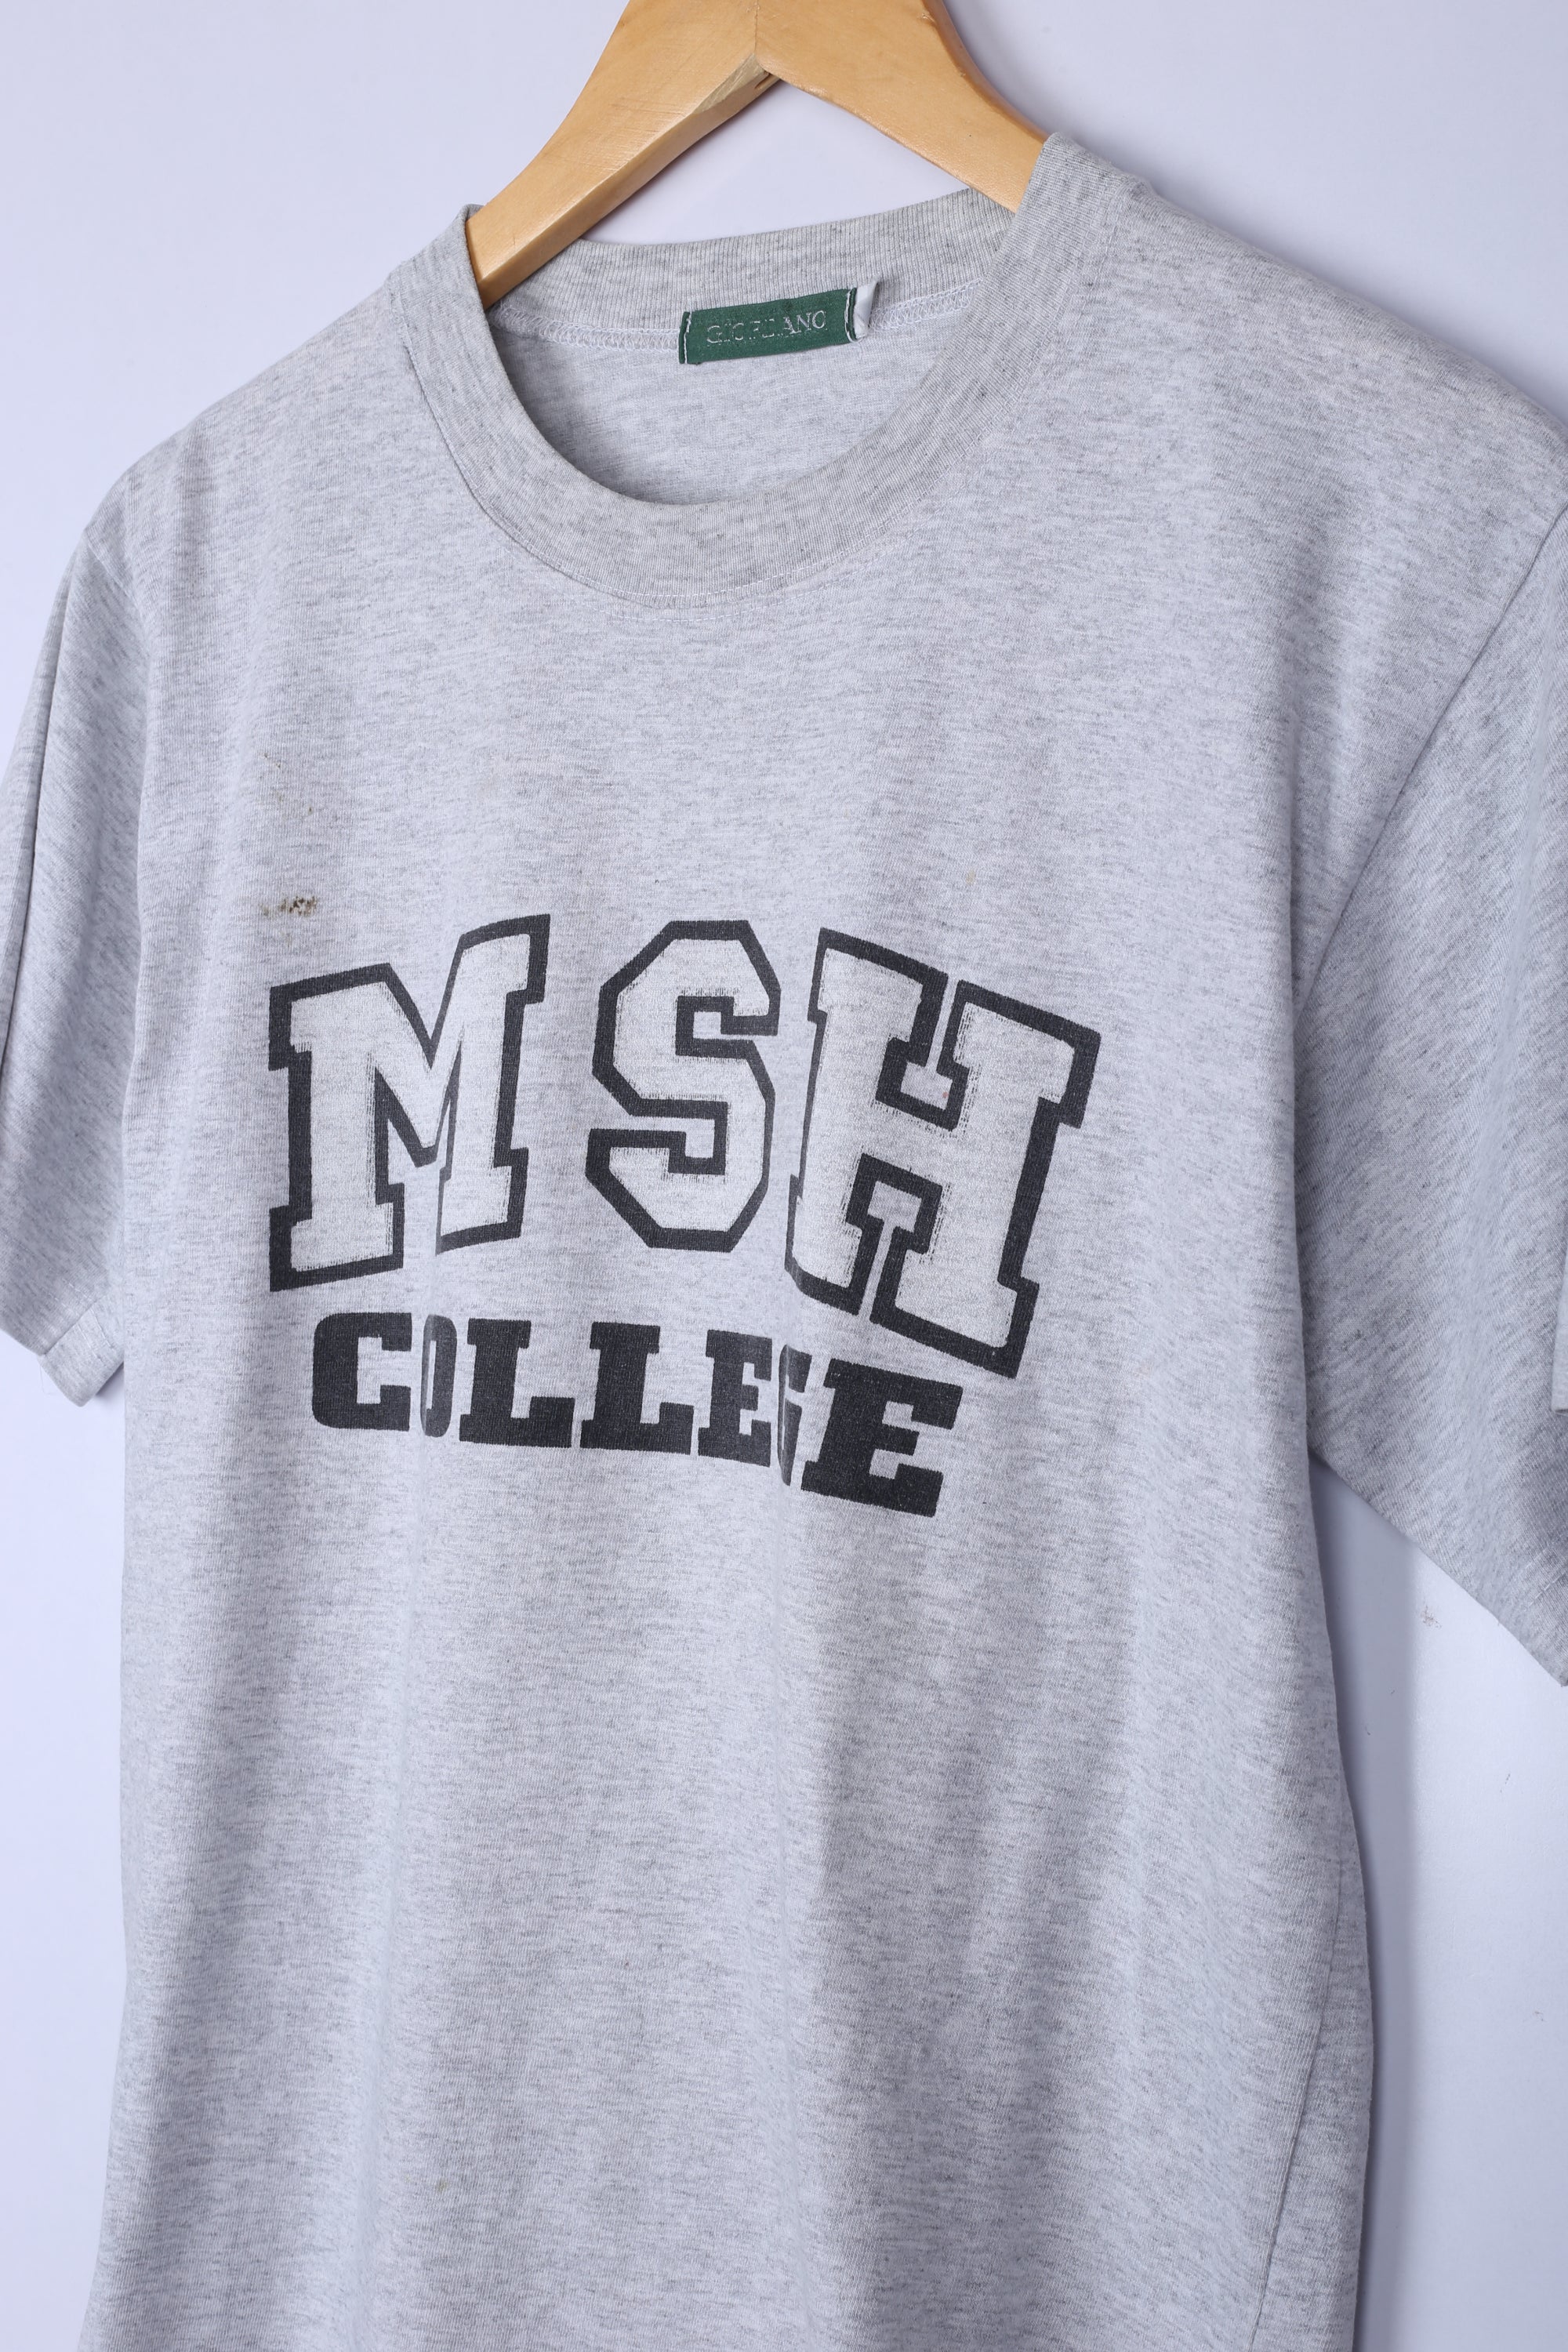 Vintage MSH College Tee Grey